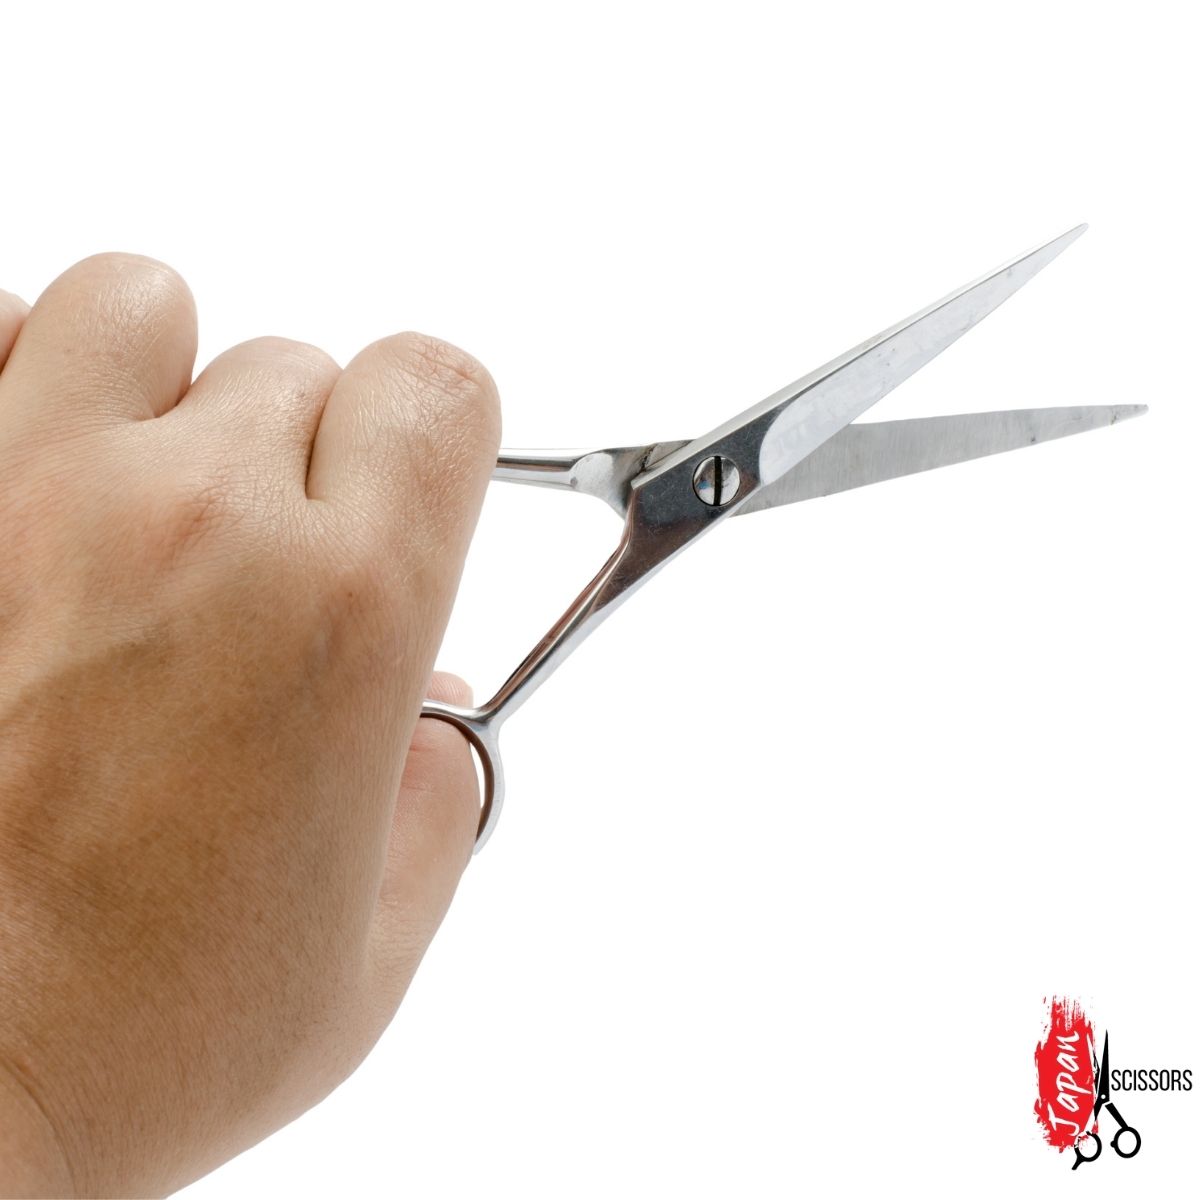 Fryzjer mierzący nożyczki do strzyżenia włosów na swojej dłoni